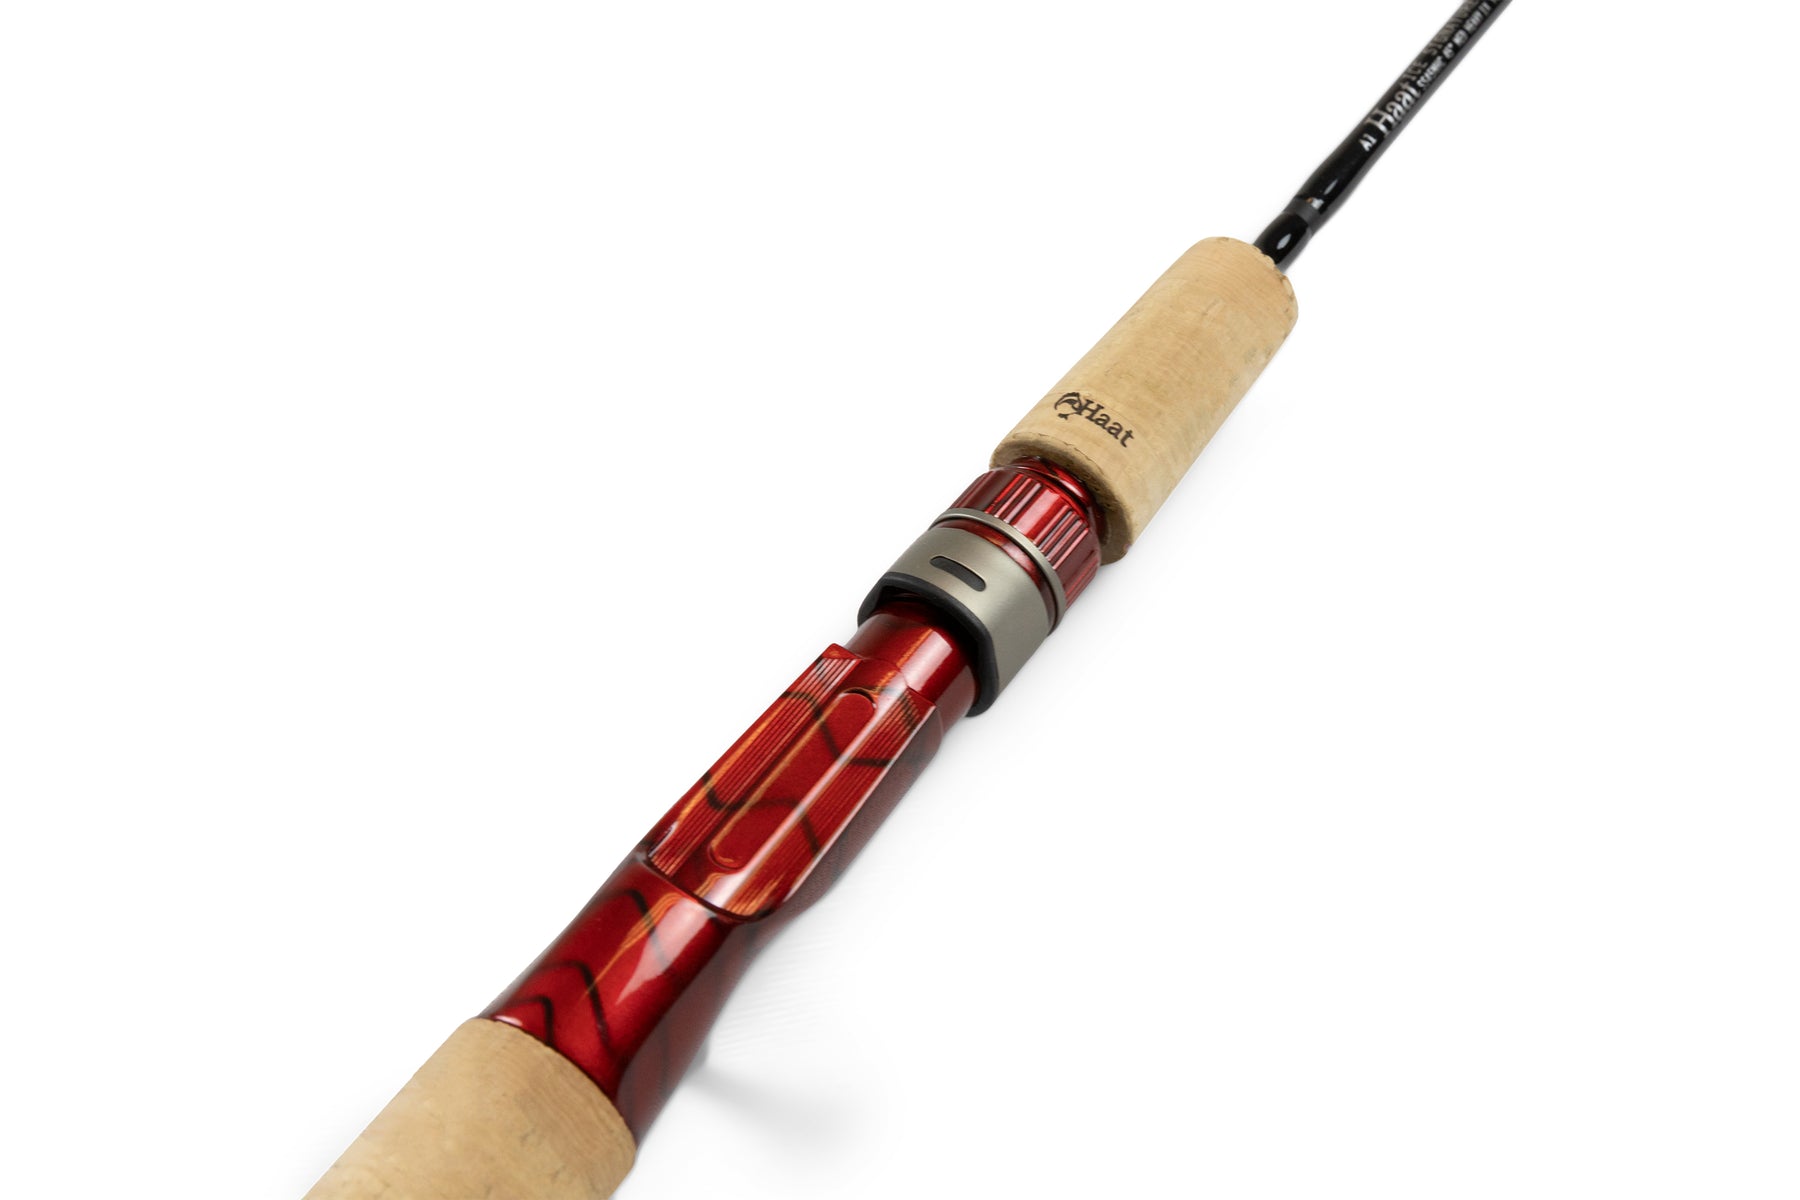 45 Medium-Heavy Casting Ice Fishing Rod